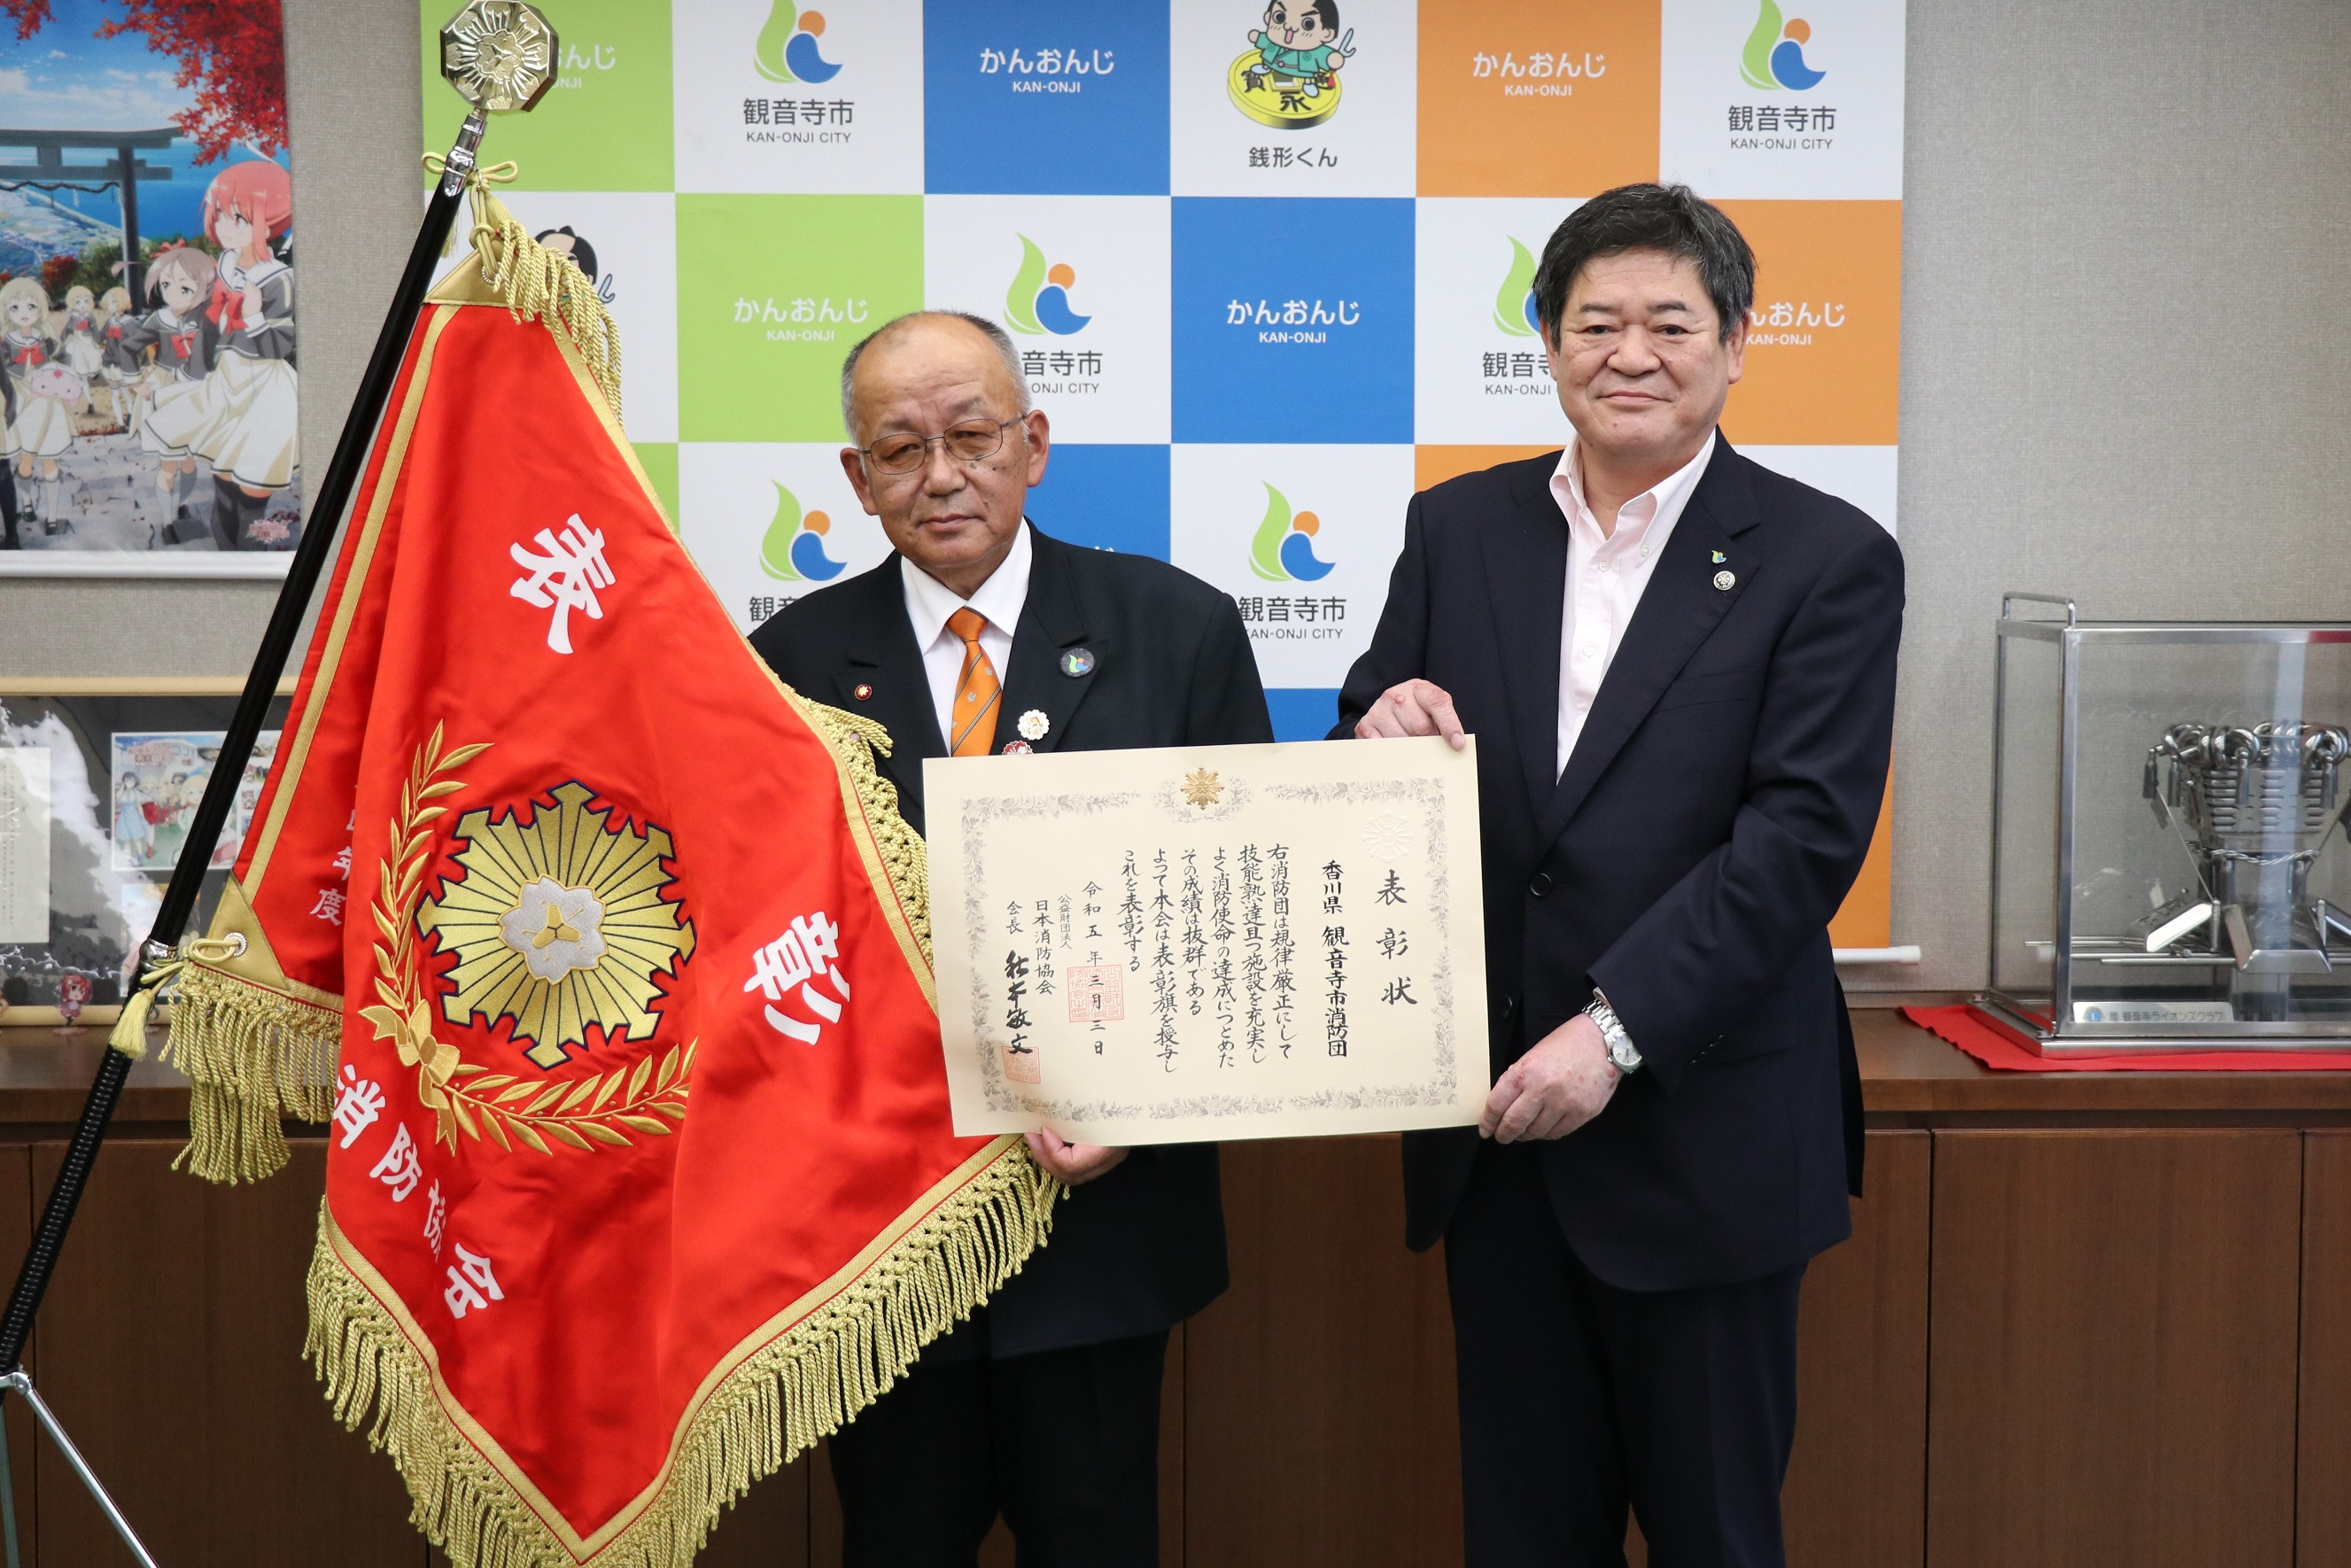 市消防団が日本消防協会から優良消防団として表彰